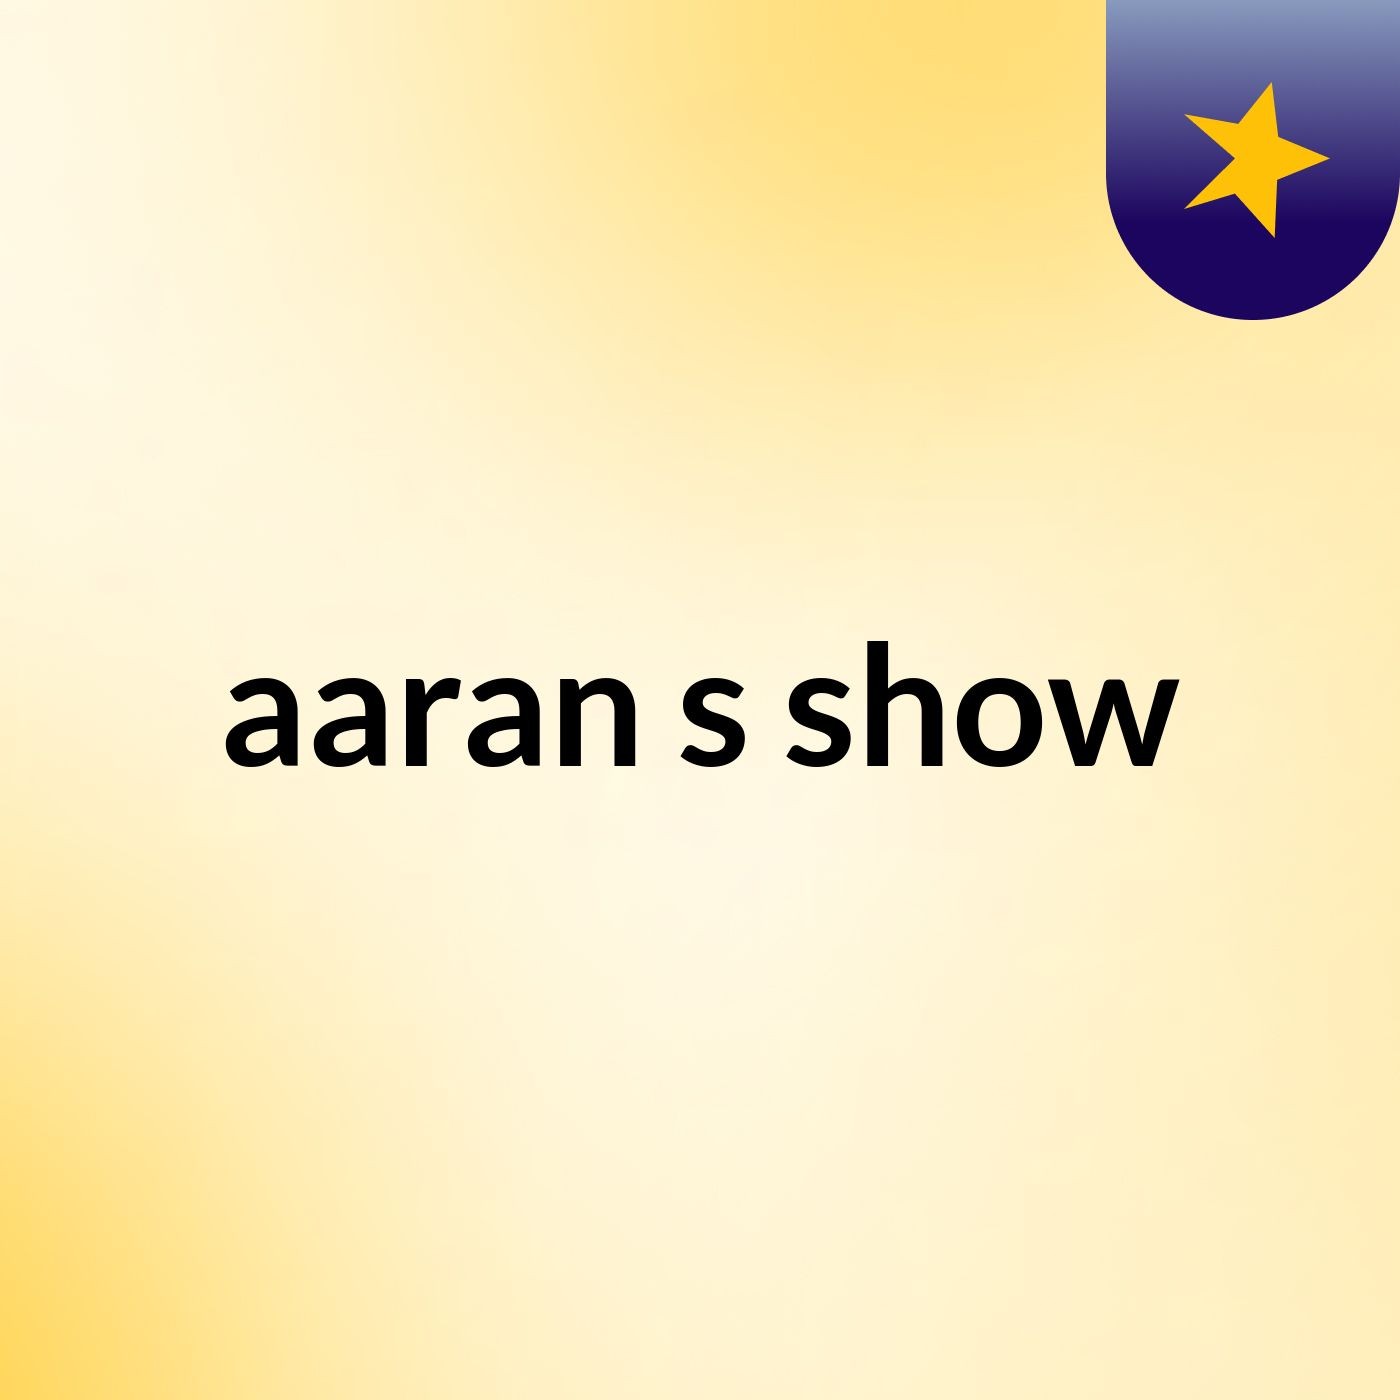 aaran's show